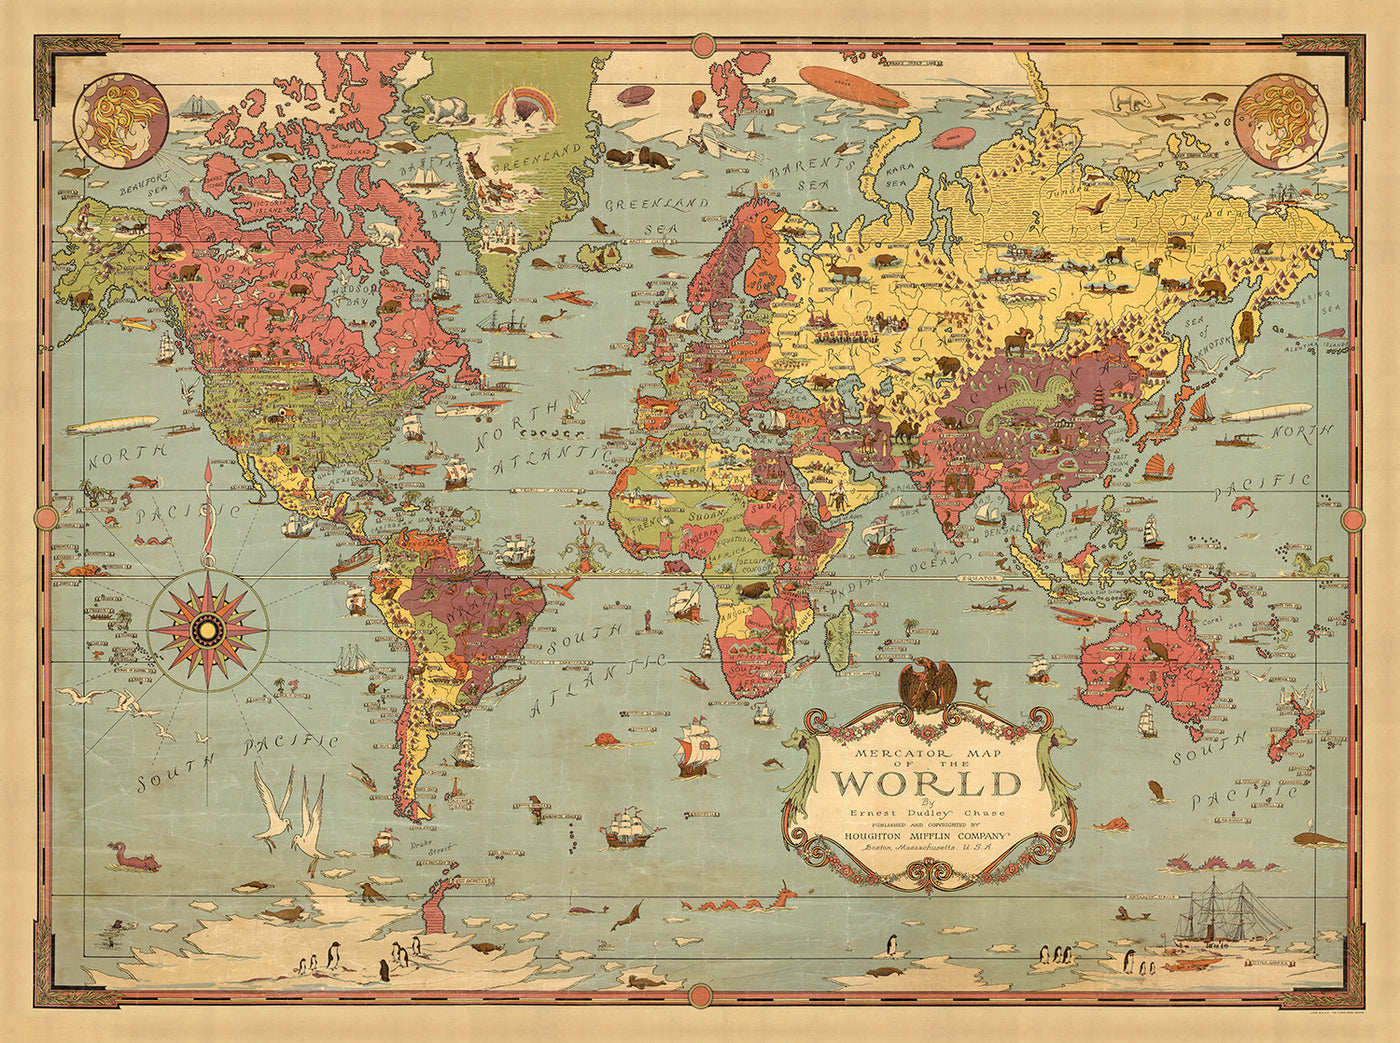 Antiguo mapa Mercator del mundo en 1931 por Ernest Dudley Chase - Monstruos míticos, pirámides, lugares emblemáticos